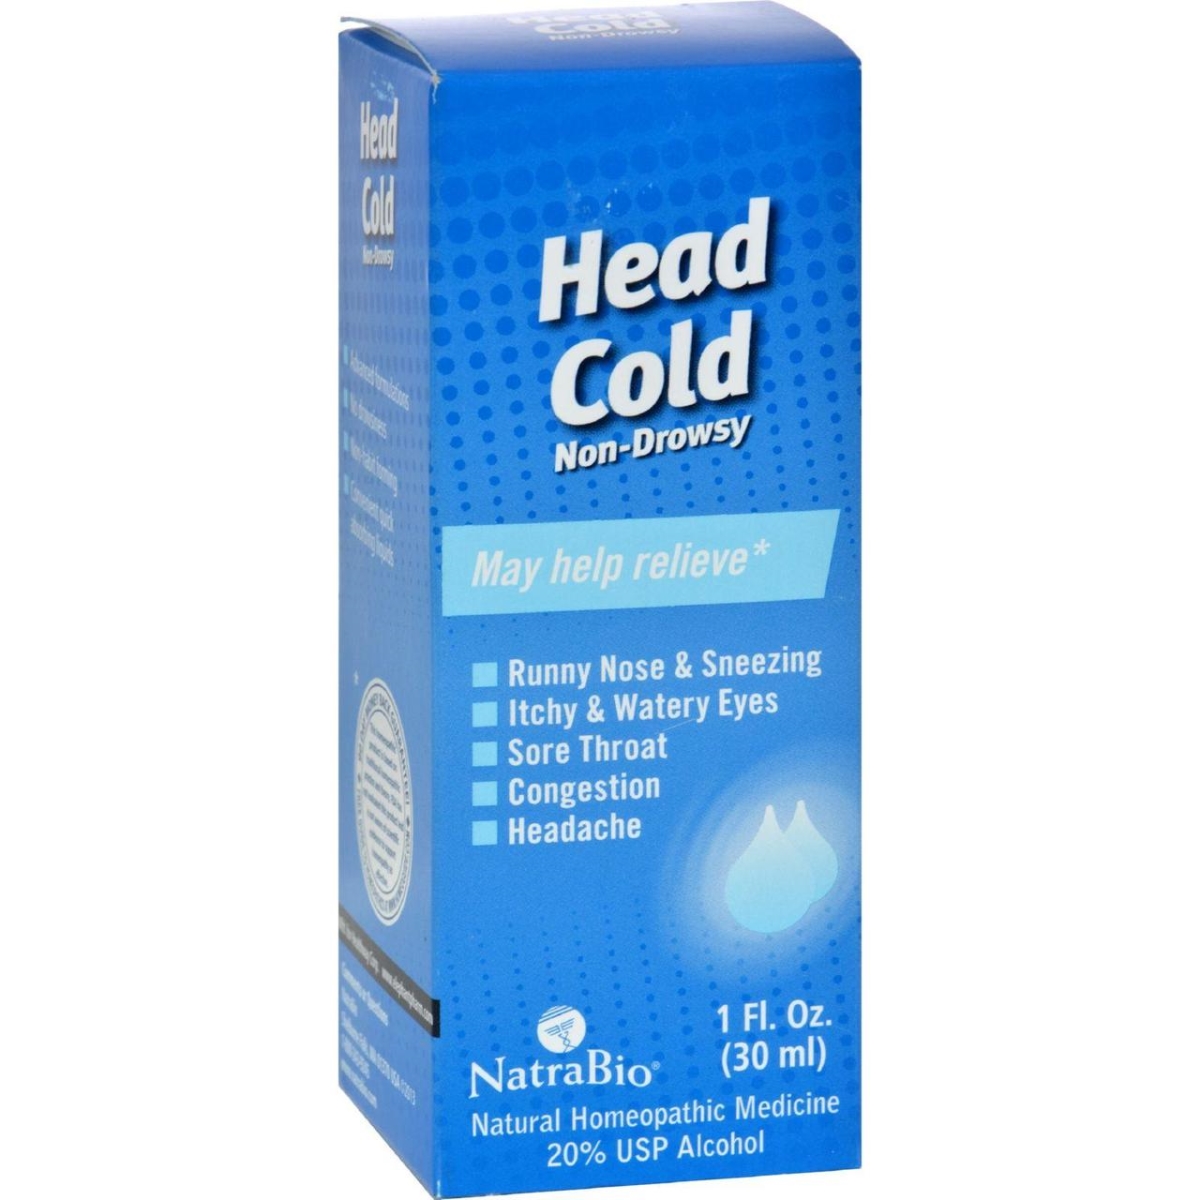 Natrabio Hg0254102 1 Fl Oz Head Cold Non-drowsy